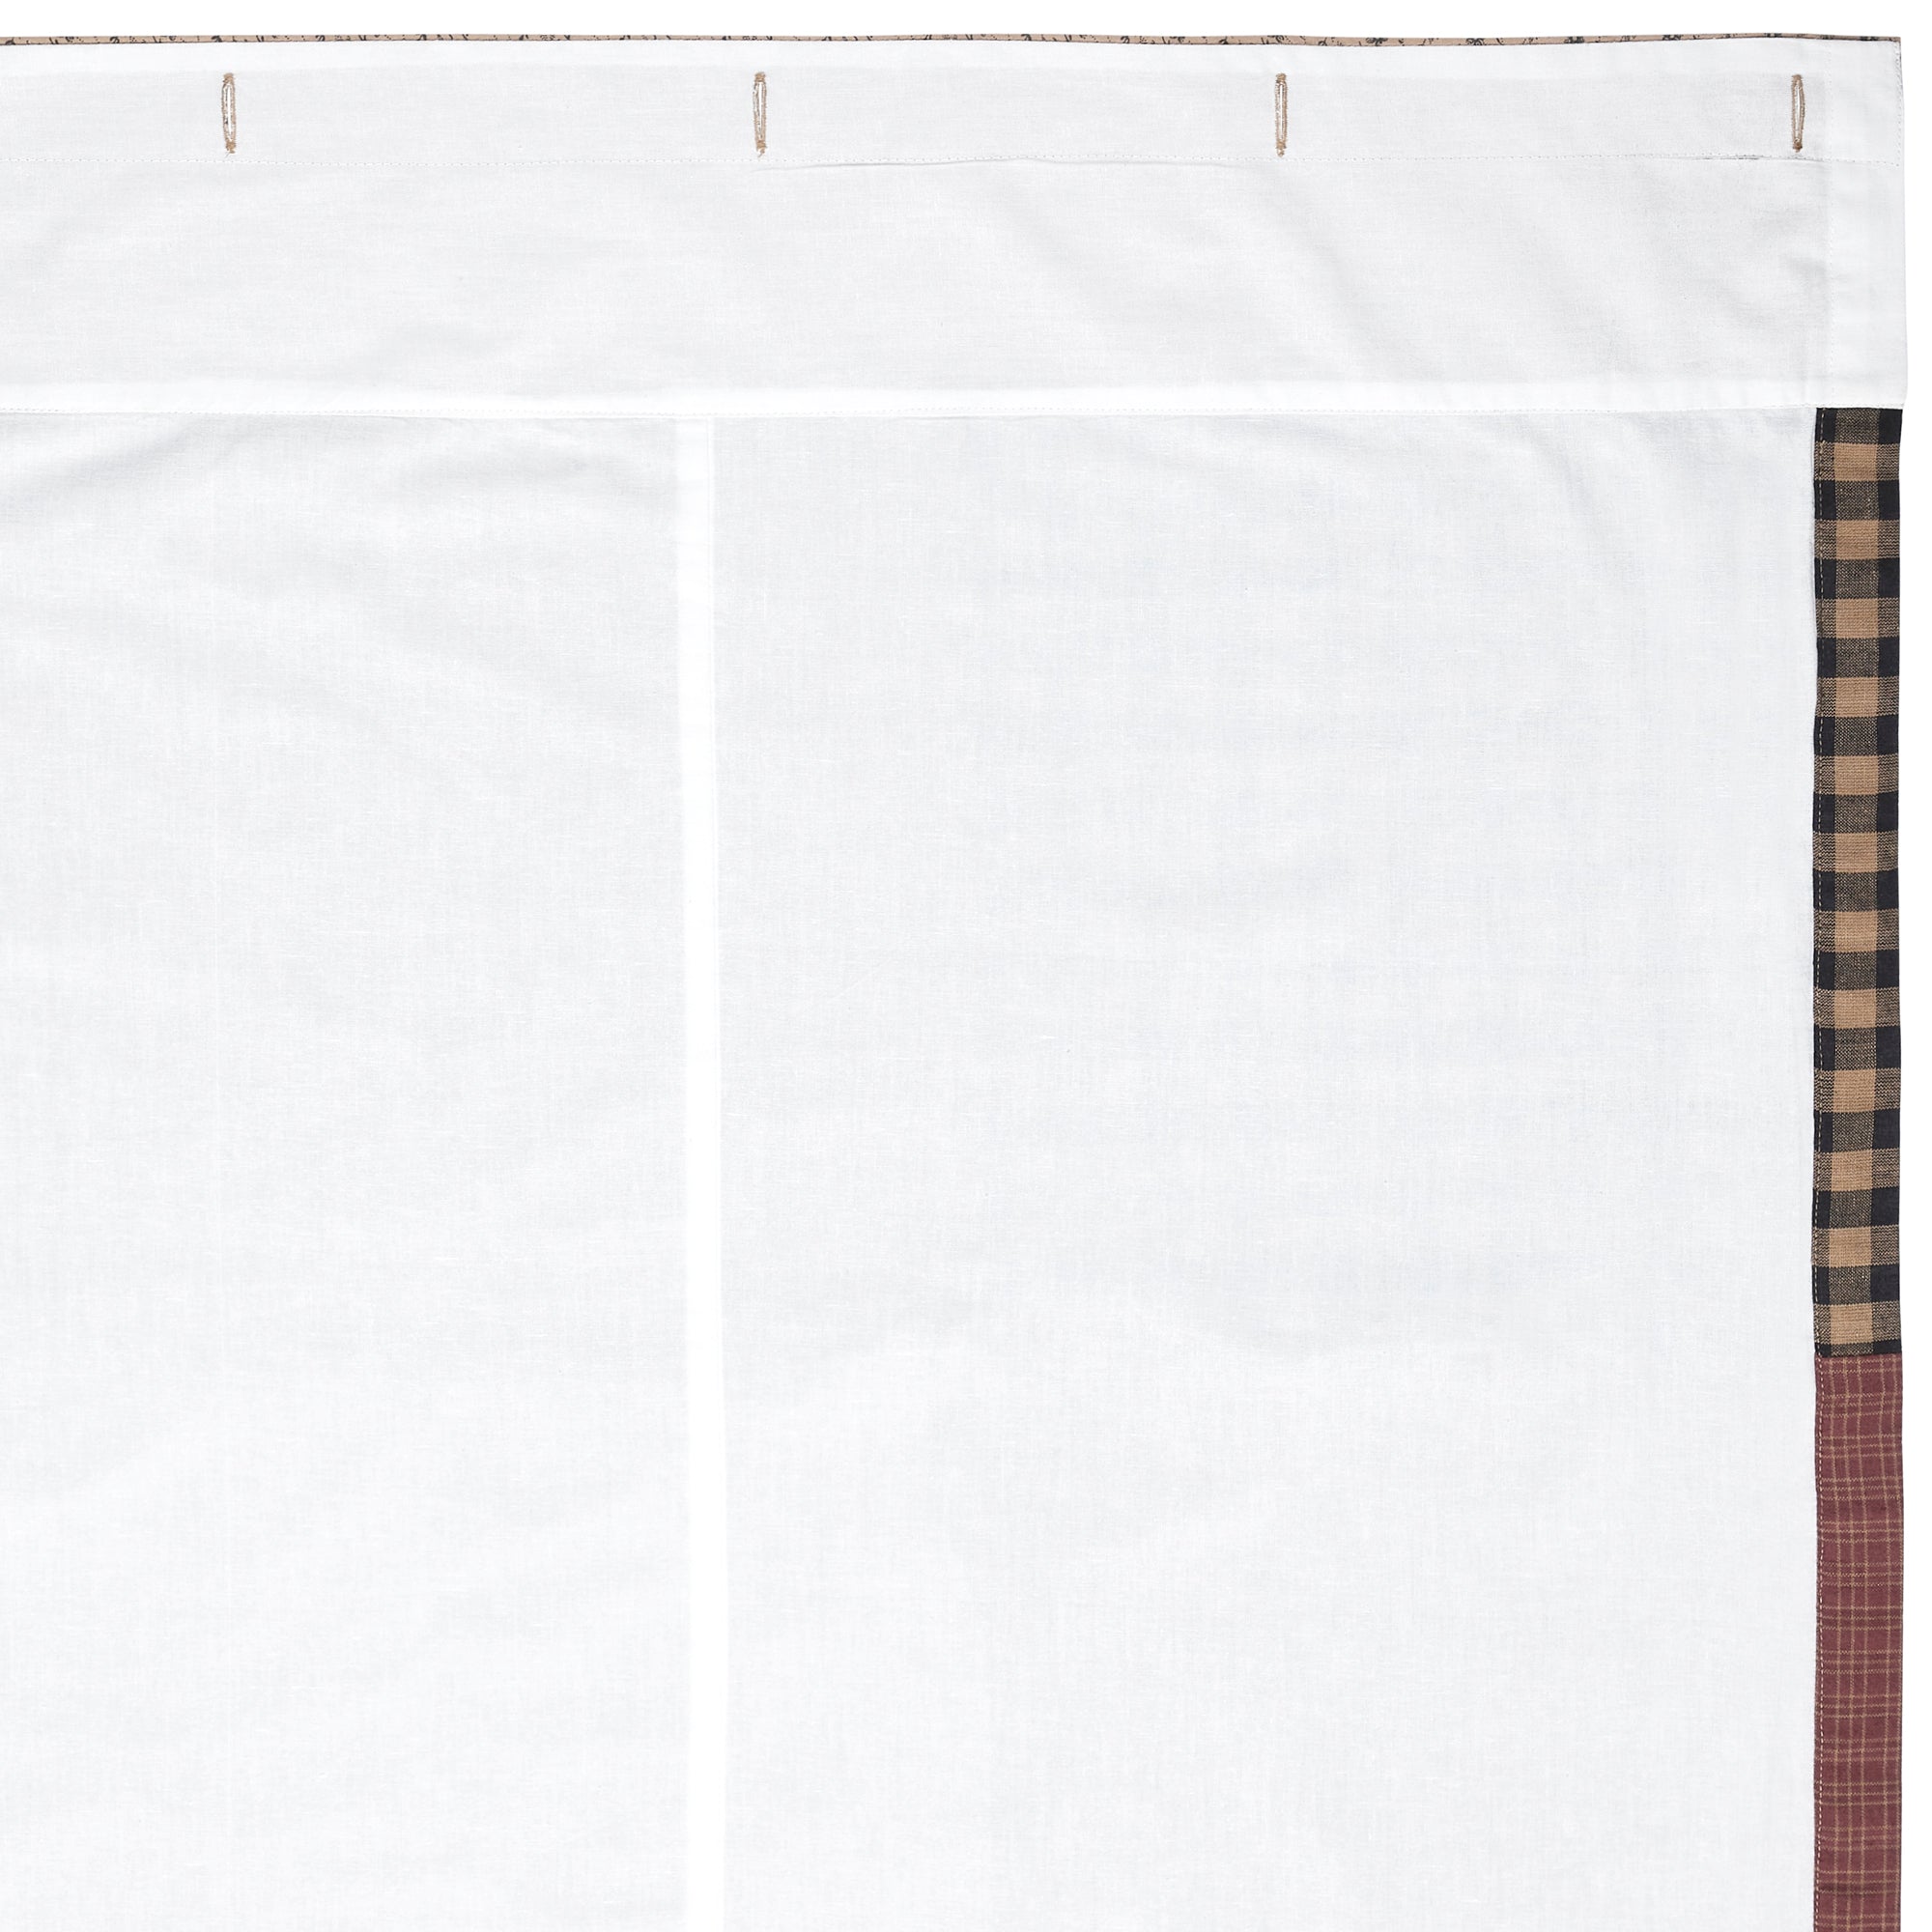 Maisie Patchwork Shower Curtain 72x72 VHC Brands